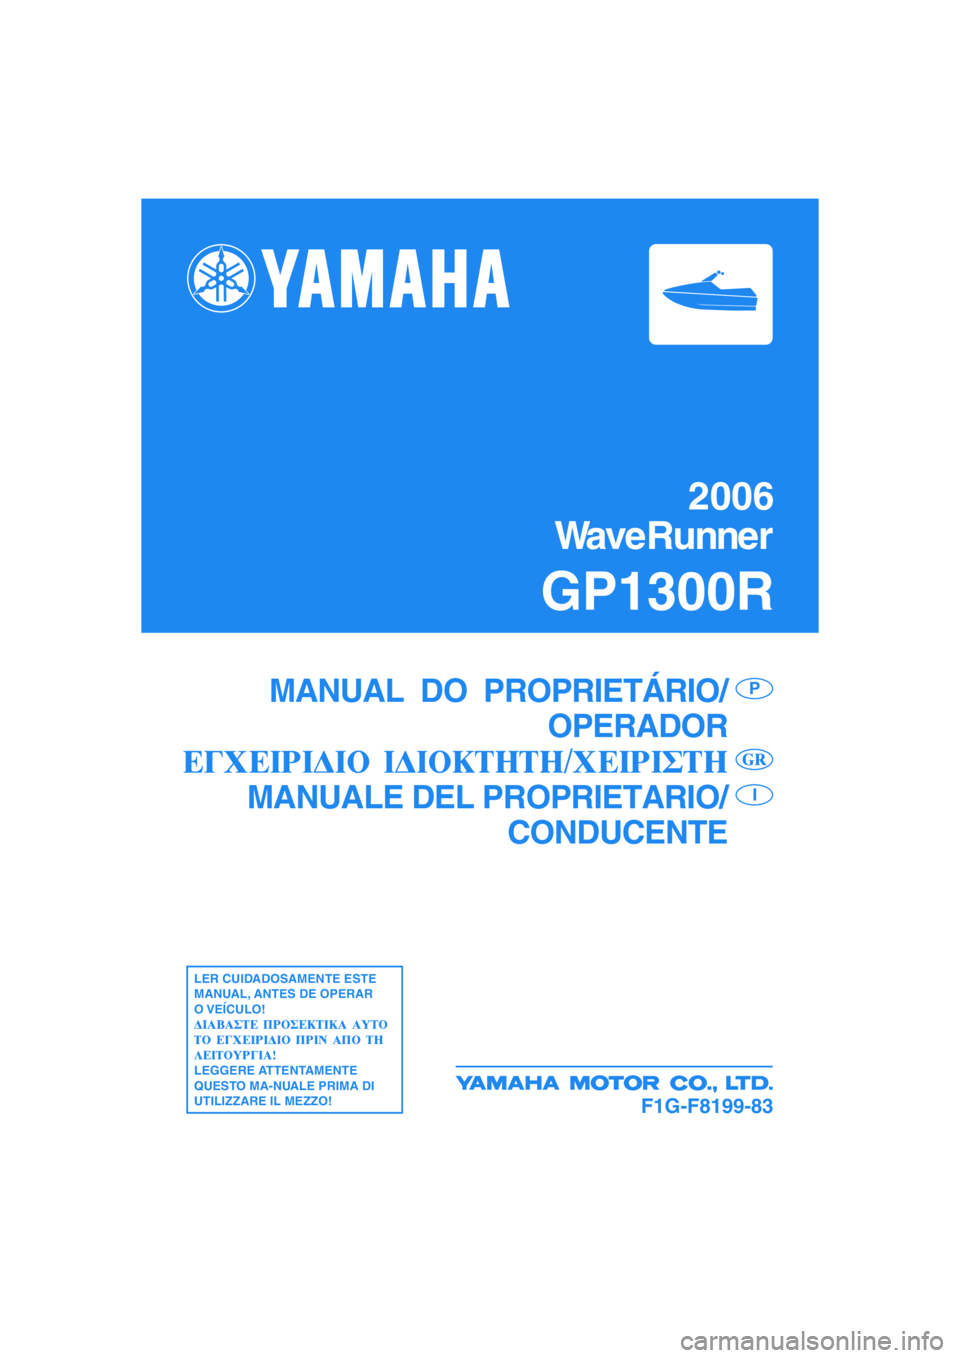 YAMAHA GP1300R 2006  Manual de utilização (in Portuguese) 2006
WaveRunner
GP1300R
F1G-F8199-83
MANUAL  DO  PROPRIETÁRIO/
OPERADOR
MANUALE DEL PROPRIETARIO/
CONDUCENTEP
I
LER CUIDADOSAMENTE ESTE
MANUAL, ANTES DE OPERAR
O VEÍCULO!
LEGGERE ATTENTAMENTE
QUESTO